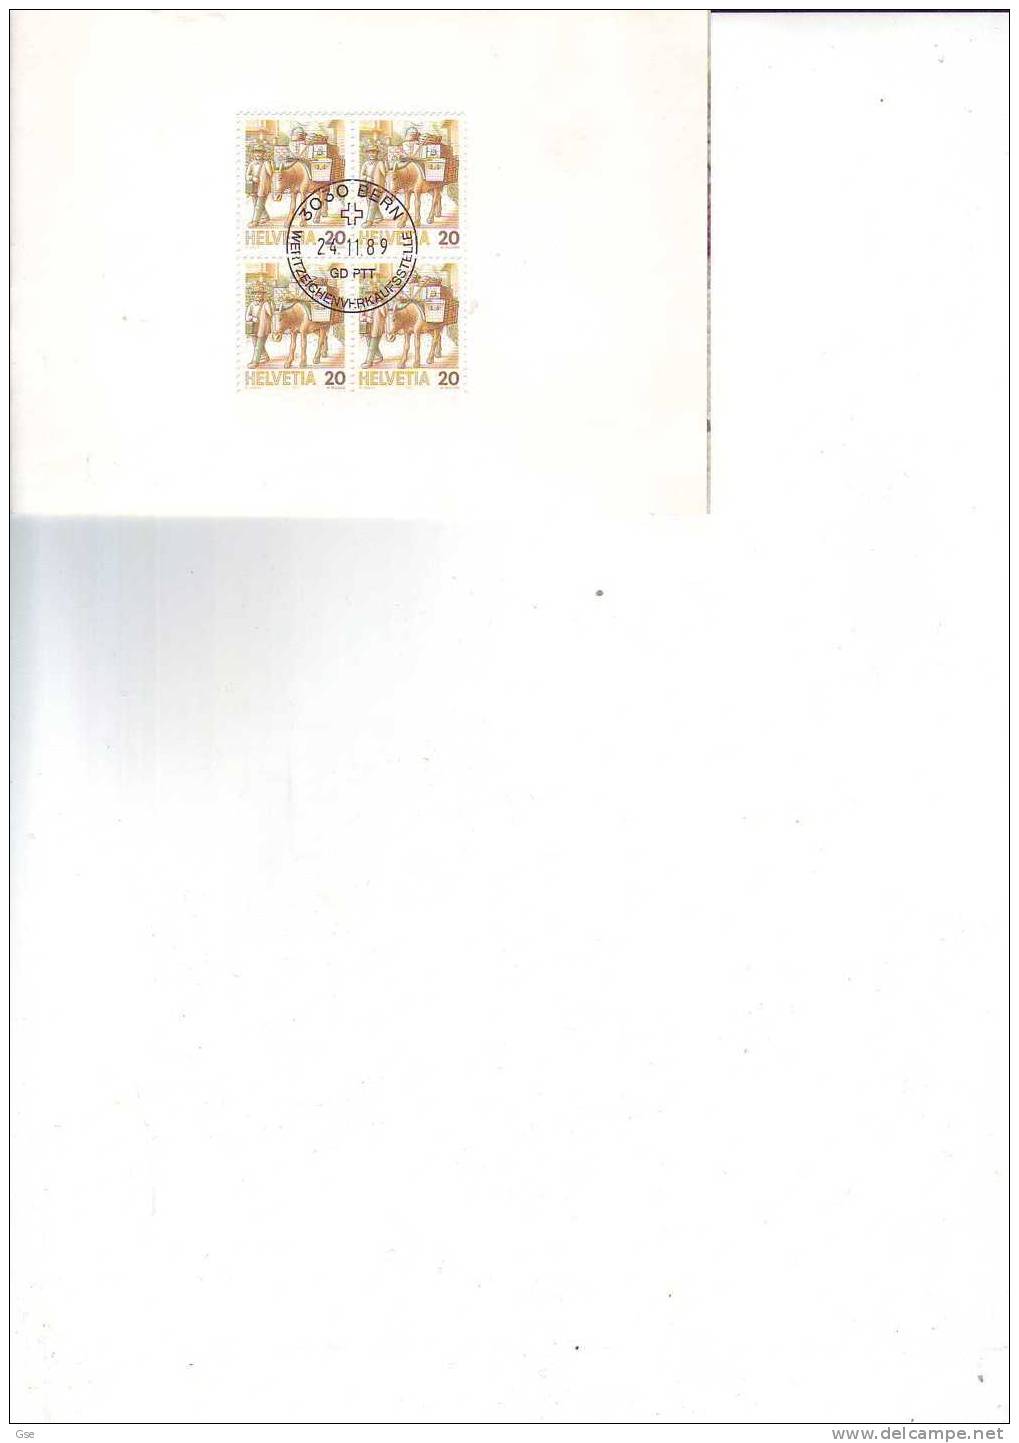 SVIZZERA 1989 - Yvert  1264 (x4) - Cartoncino Con Annullo Speciale  Illustrato - Servizi Postali - Anes